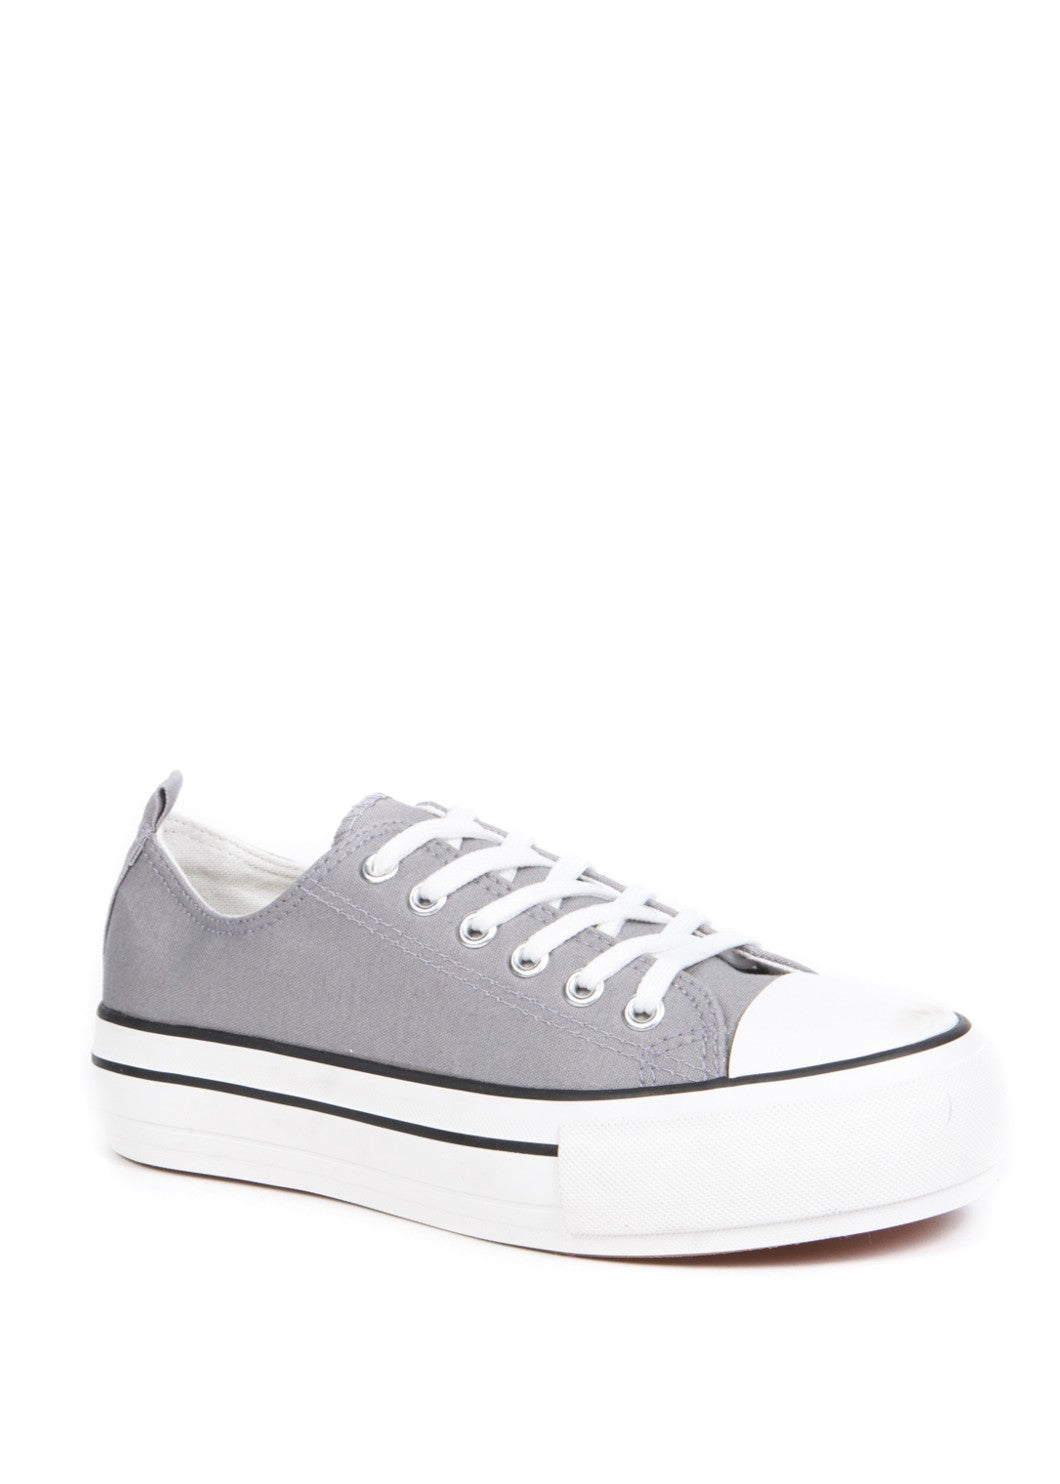 ERIN - Platform Sneakers - Grey